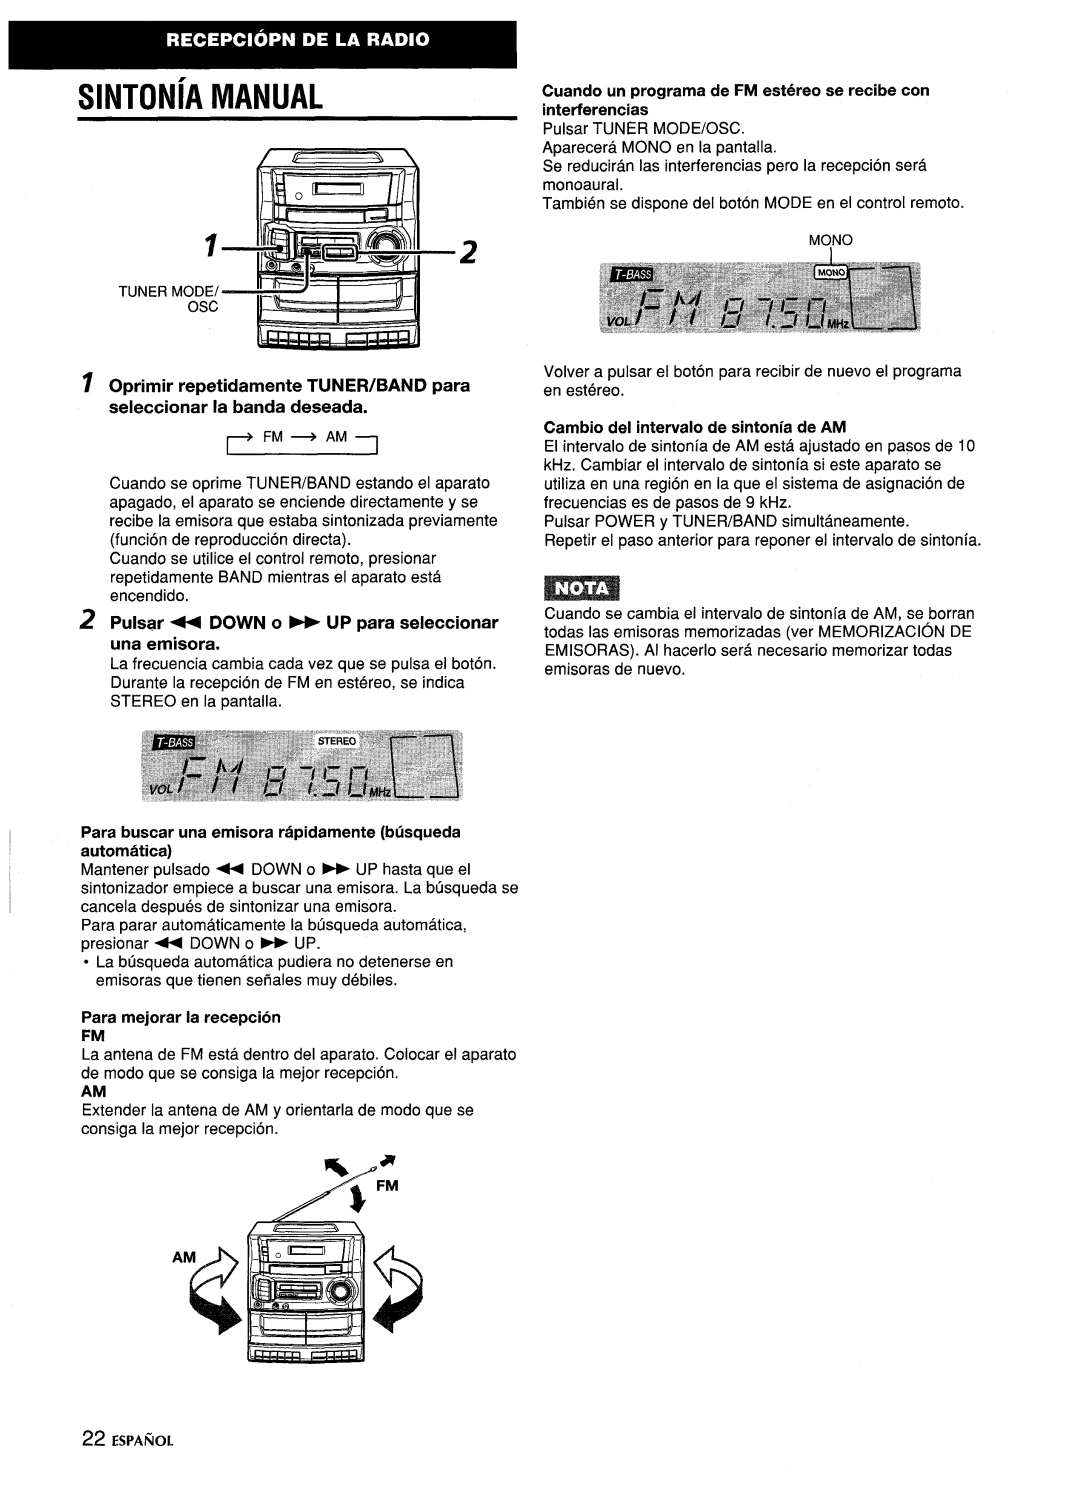 Aiwa CA-DW635 manual SINTONiA MANUAL, ~ Oprimir repetidamente TUNER/BAND para seleccionar la banda deseada 